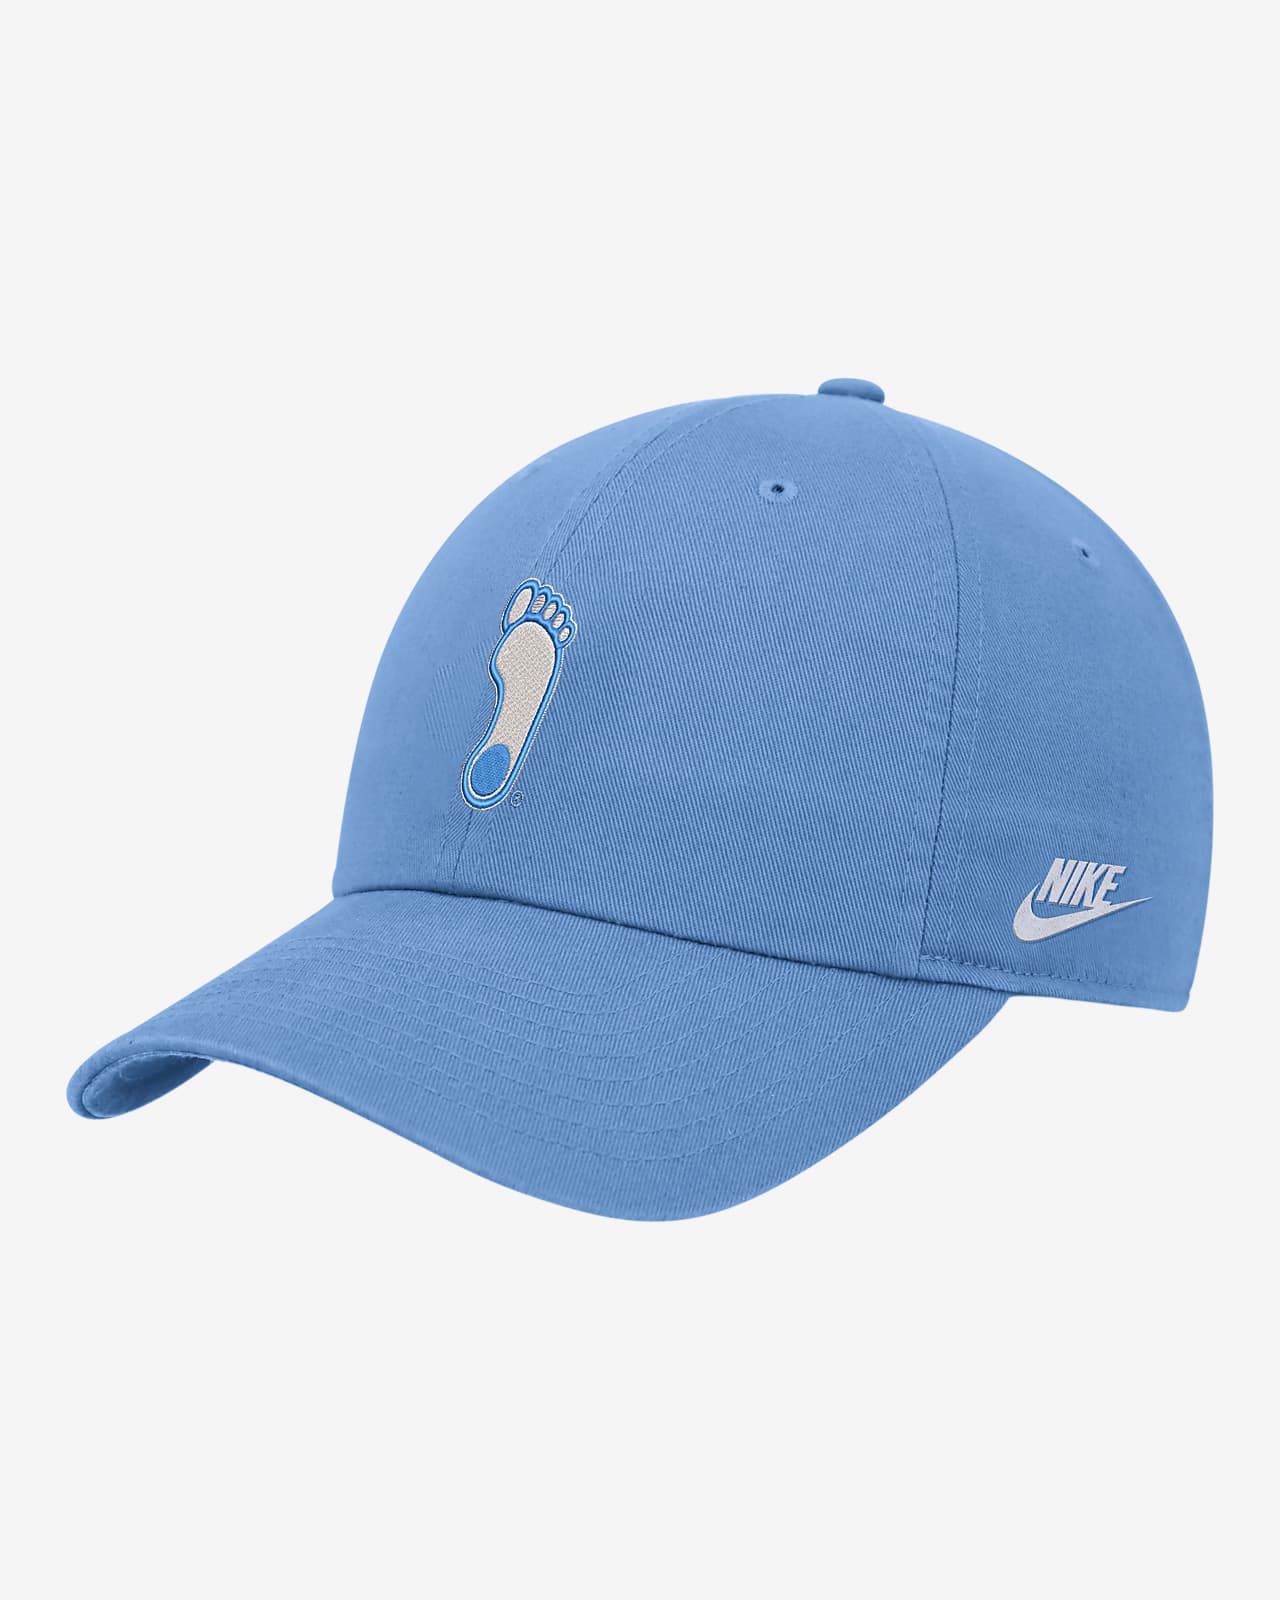 UNC Nike College Adjustable Cap